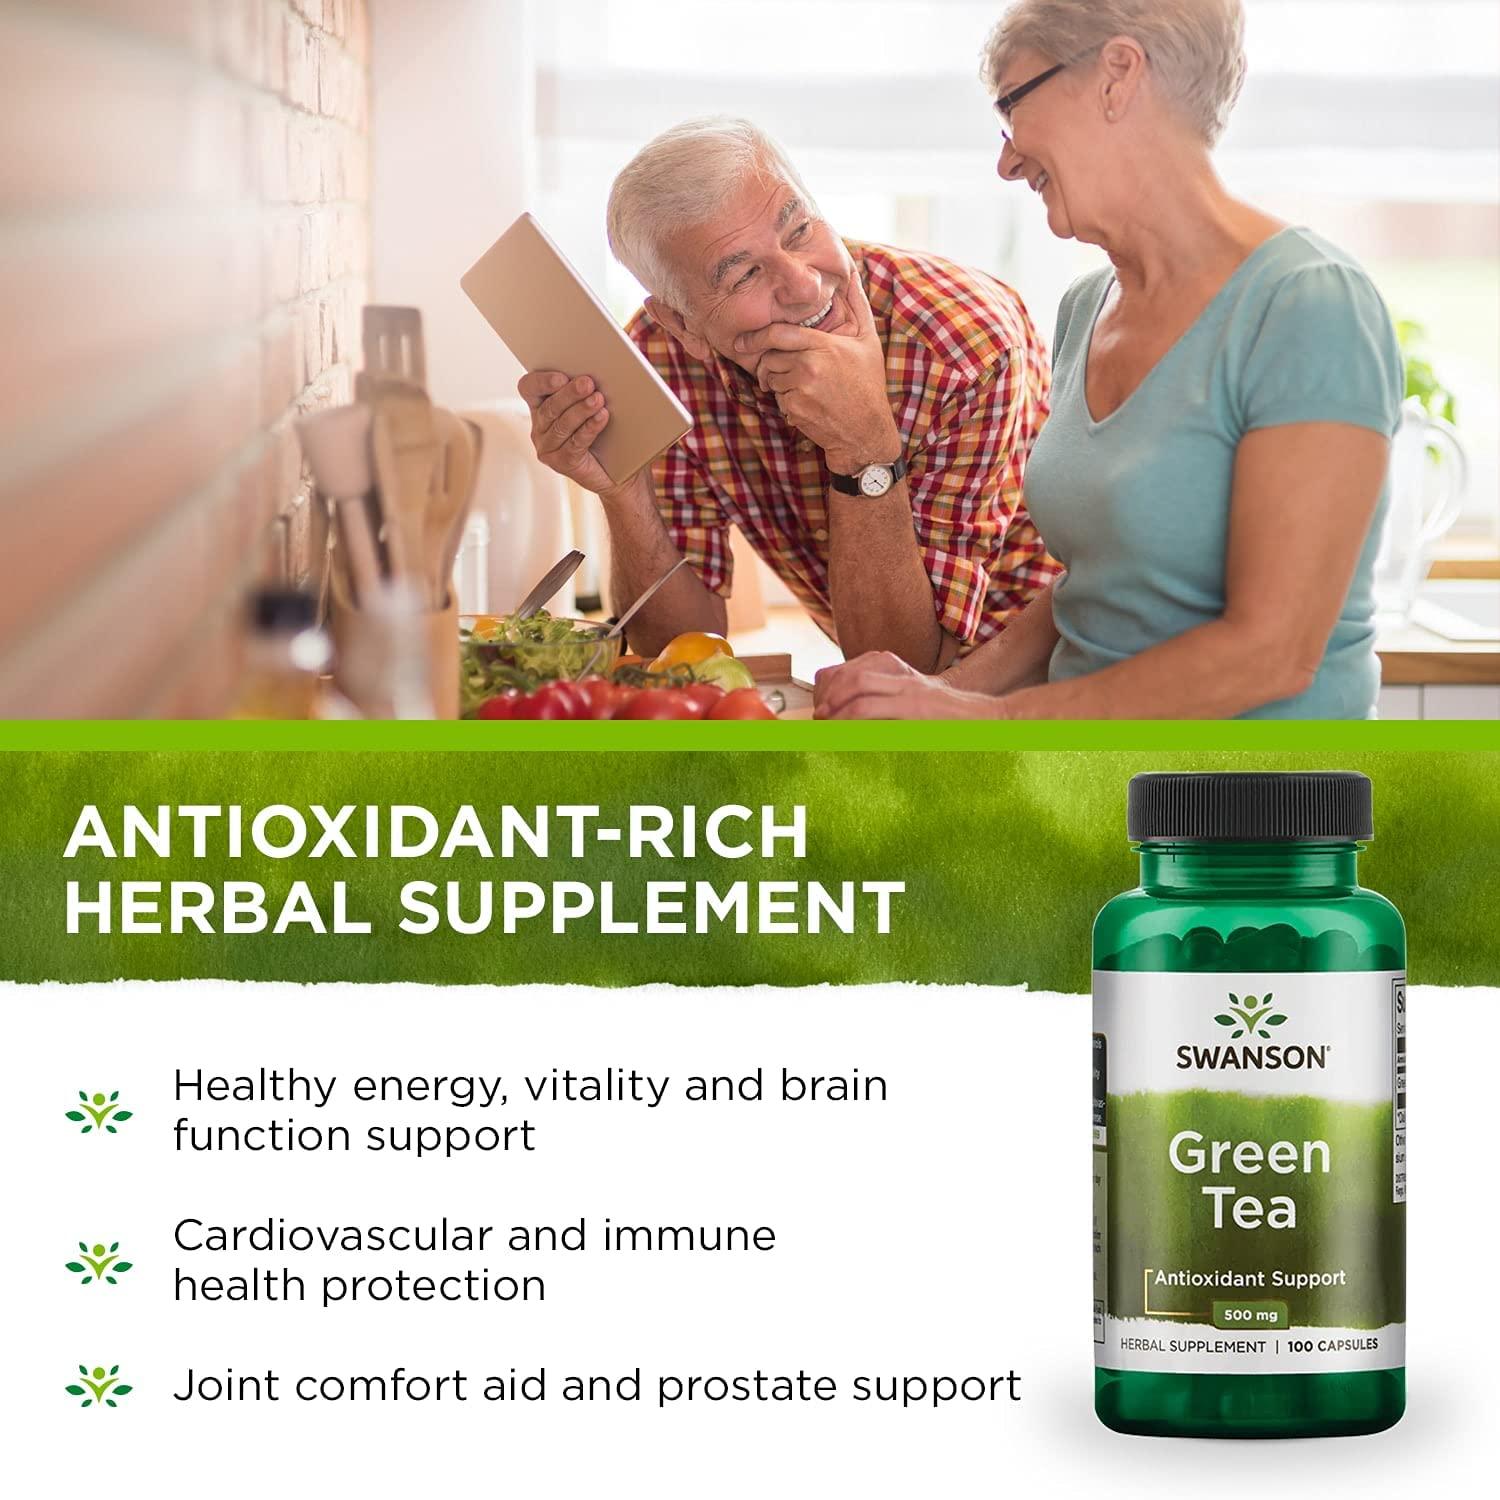 Antioxidant-rich antioxidant-rich supplements